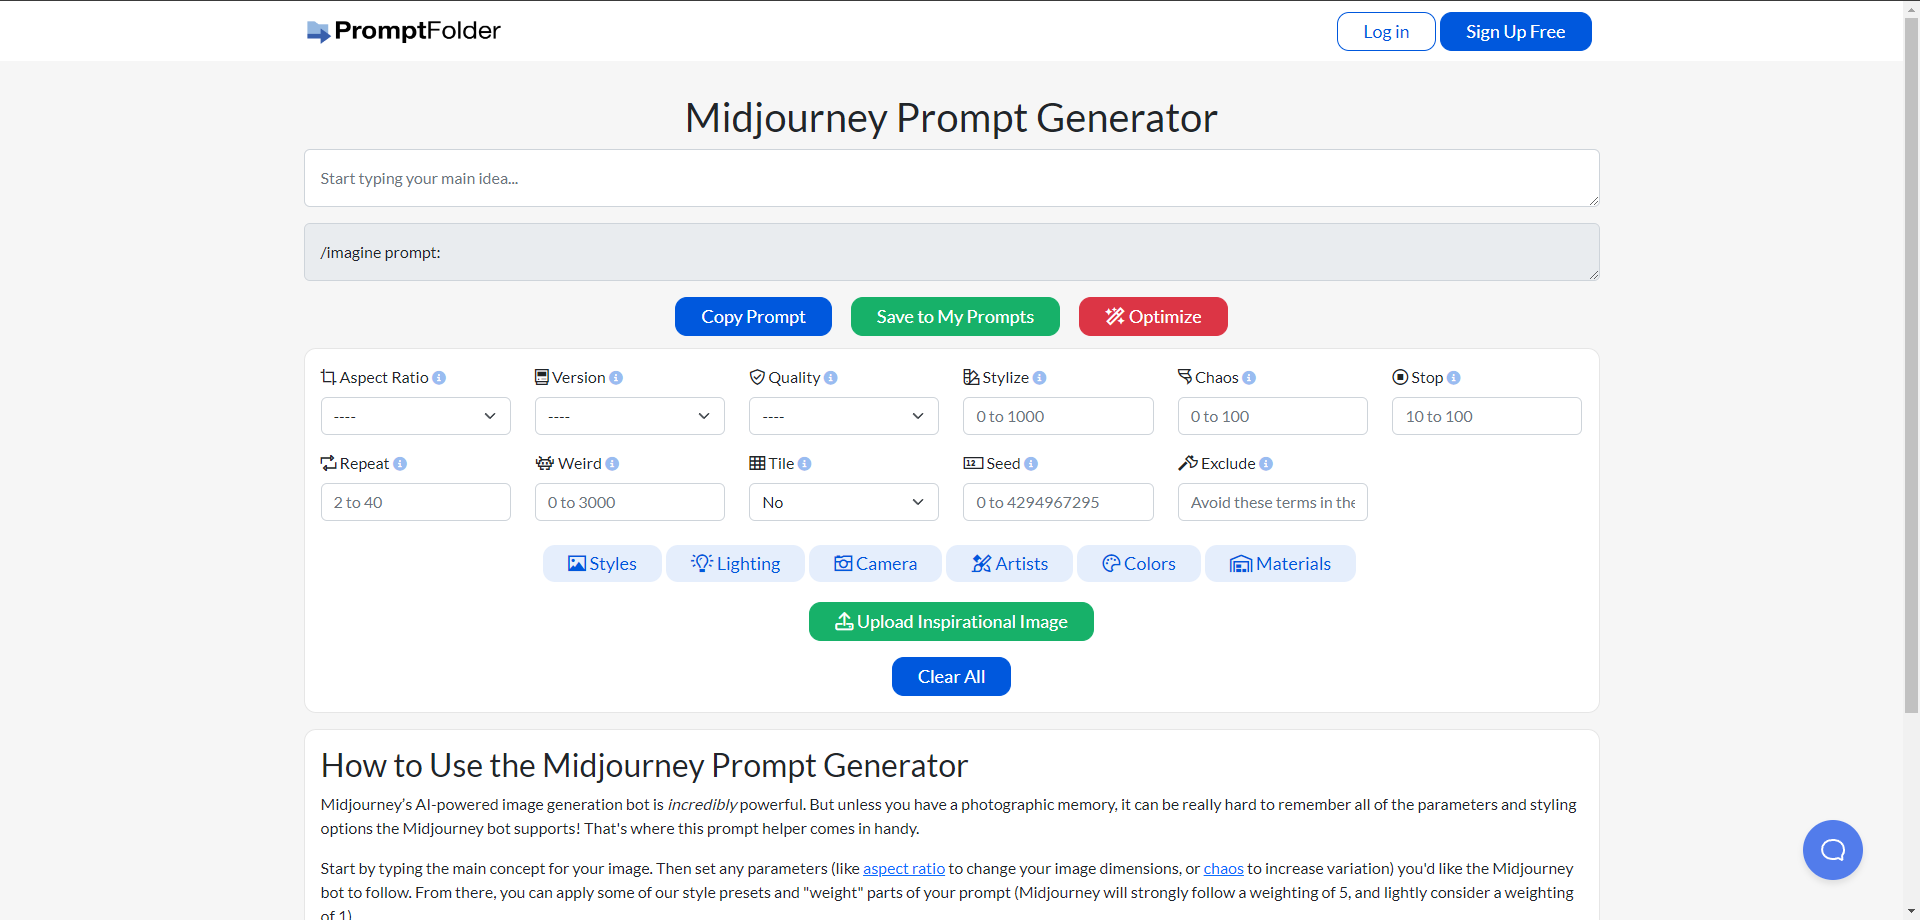 PromptFolder's Midjourney Prompt Helper